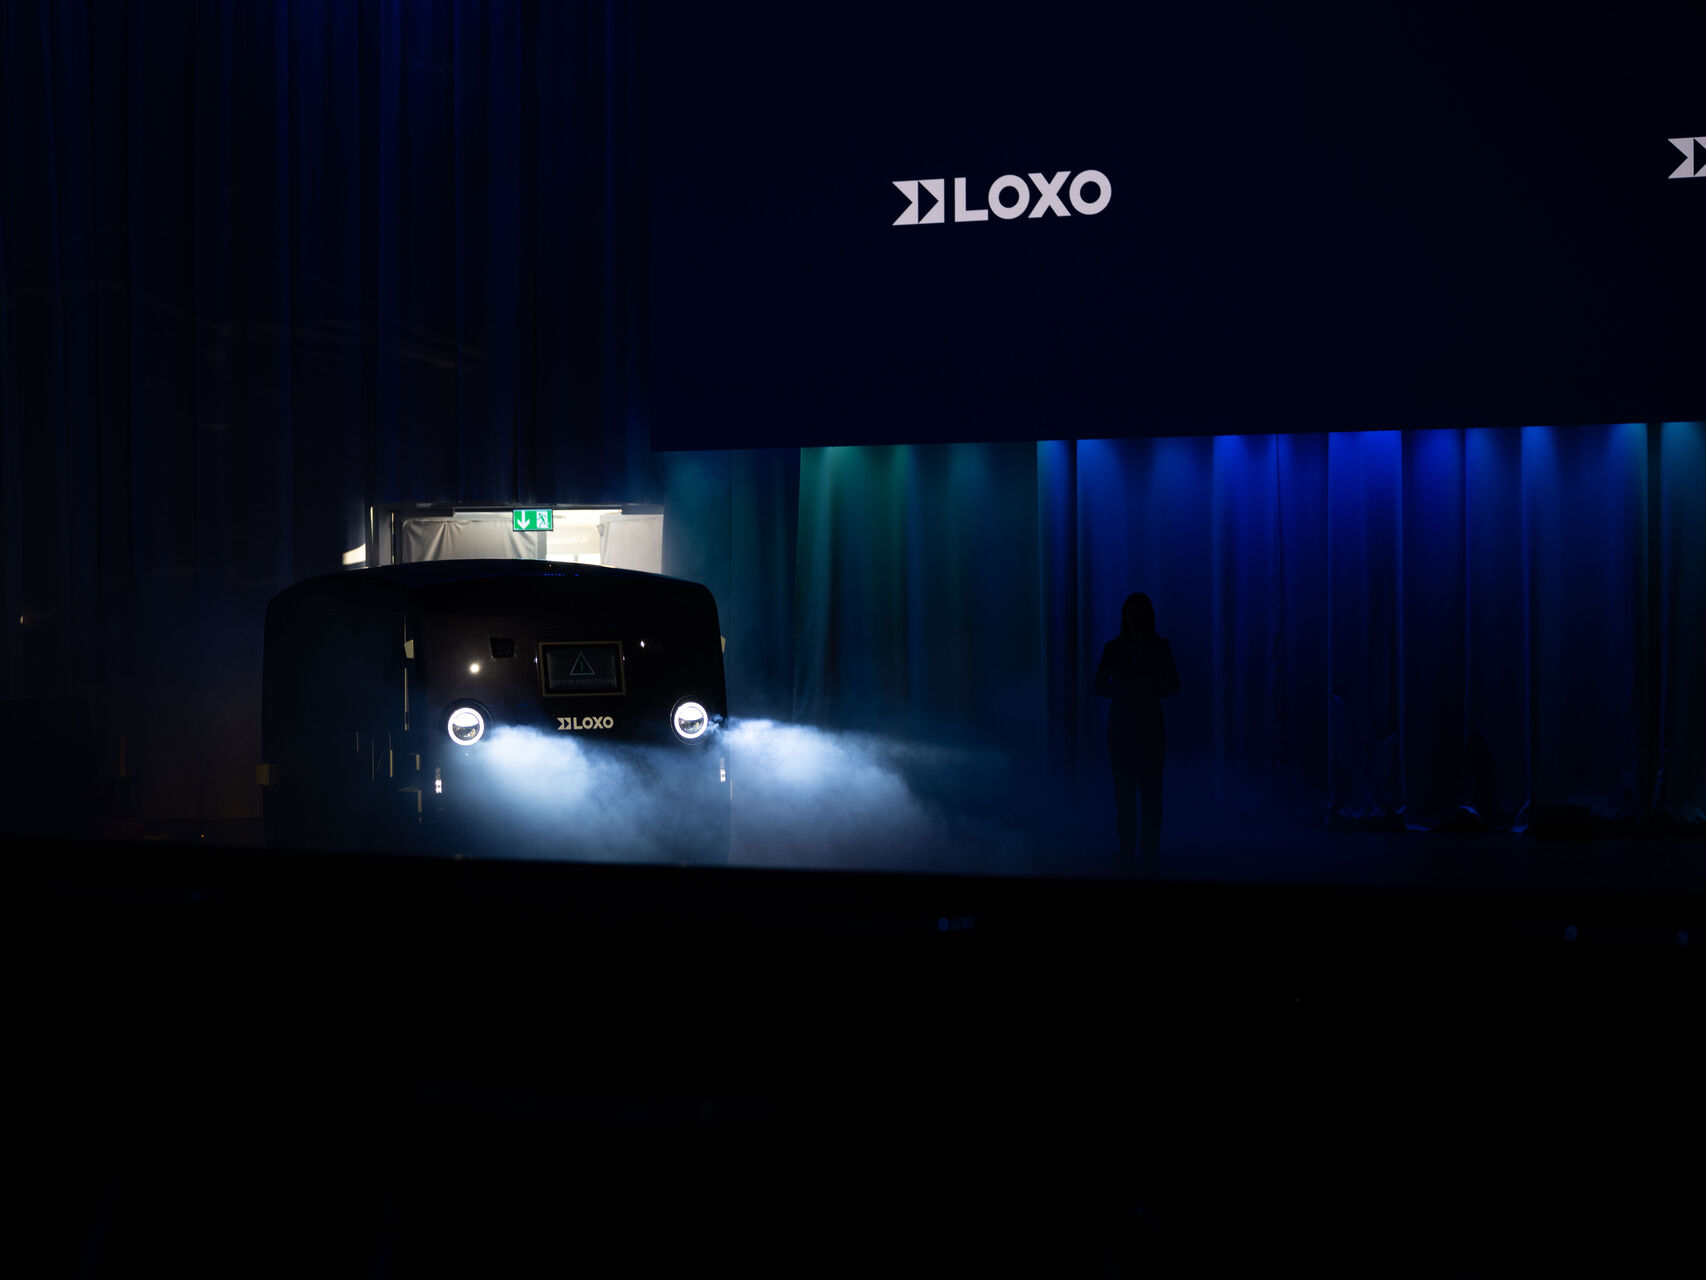 LOXO: আলফা হল একটি স্ব-চালিত ভ্যান যা সম্পূর্ণরূপে সুইজারল্যান্ডে তৈরি এবং 6 ডিসেম্বর 2022 তারিখে বার্নের কুরসালে স্টার্ট-আপ LOXO দ্বারা একটি প্রেস কনফারেন্সের সময় উপস্থাপন করা হয়েছিল